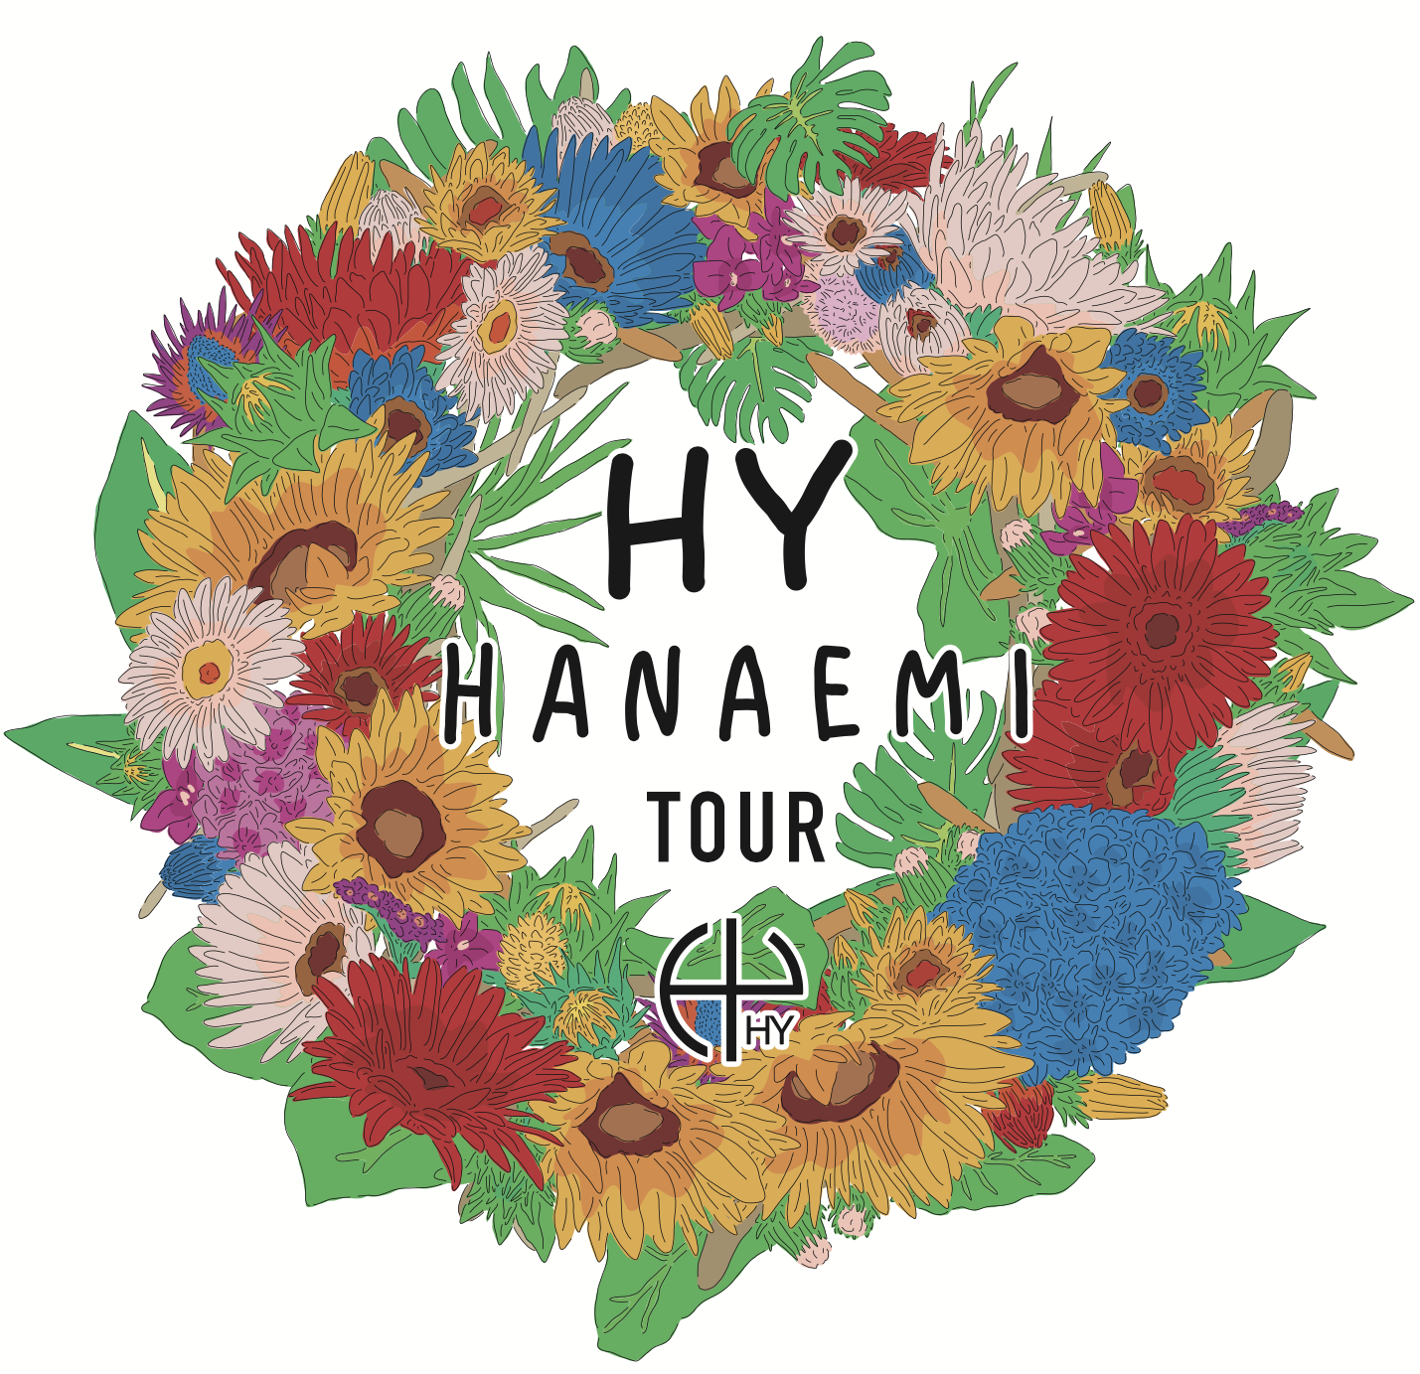 HY HANAEMI TOUR デジタルパンフレット 公開！ | HYオフィシャルウェブサイト HY-ROAD